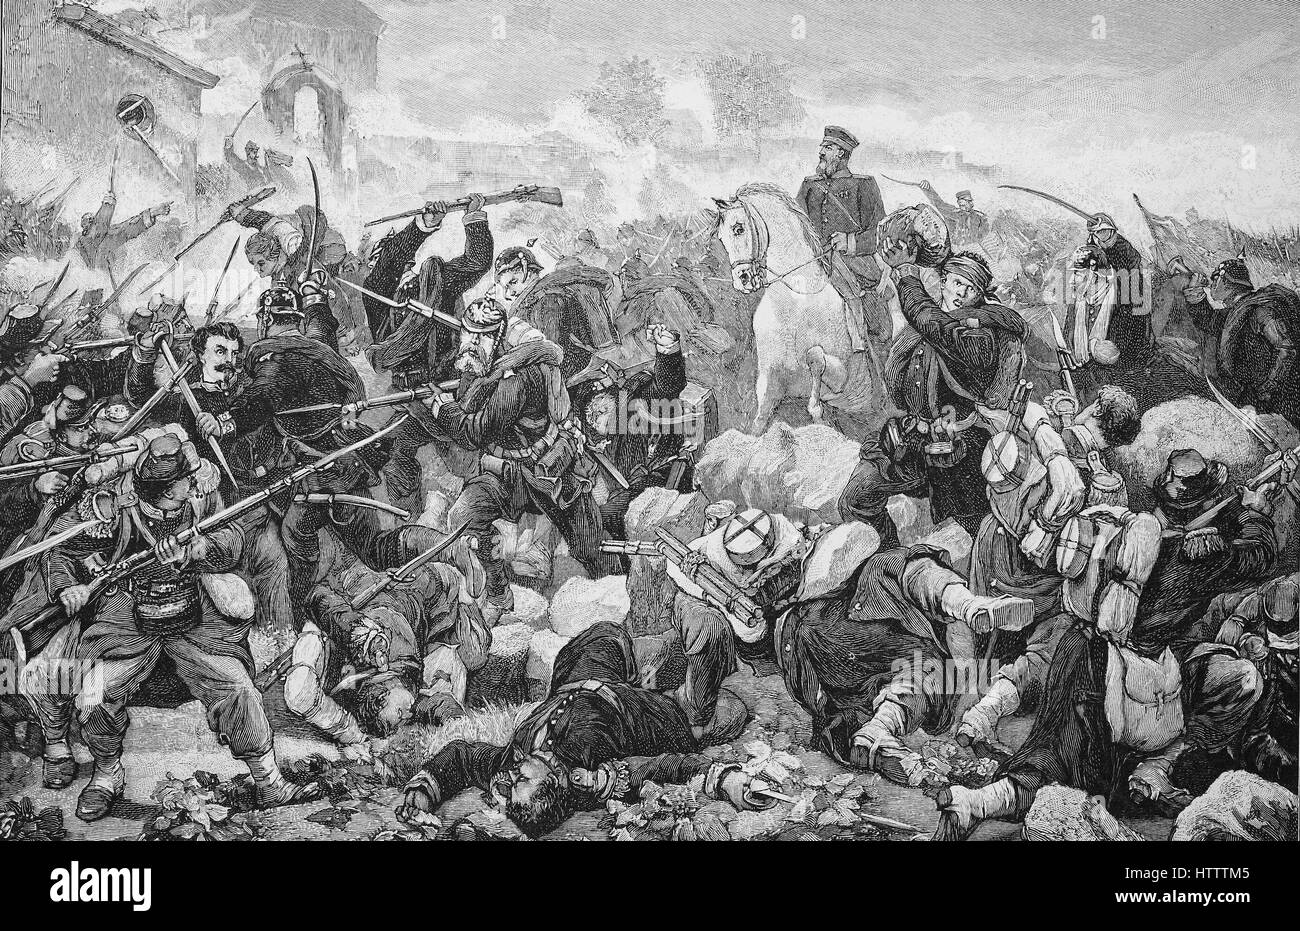 Militärische Menschen in Franco-Preussischer Krieg 1870 - 1871, Sturm der Garde auf Gravelotte in Frankreich Bataille de Saint-Privat genannt, war eine Schlacht im deutsch-französischen Krieg, Reproduktion von einem Holzschnitt aus dem Jahr 1882, digital verbessert Stockfoto